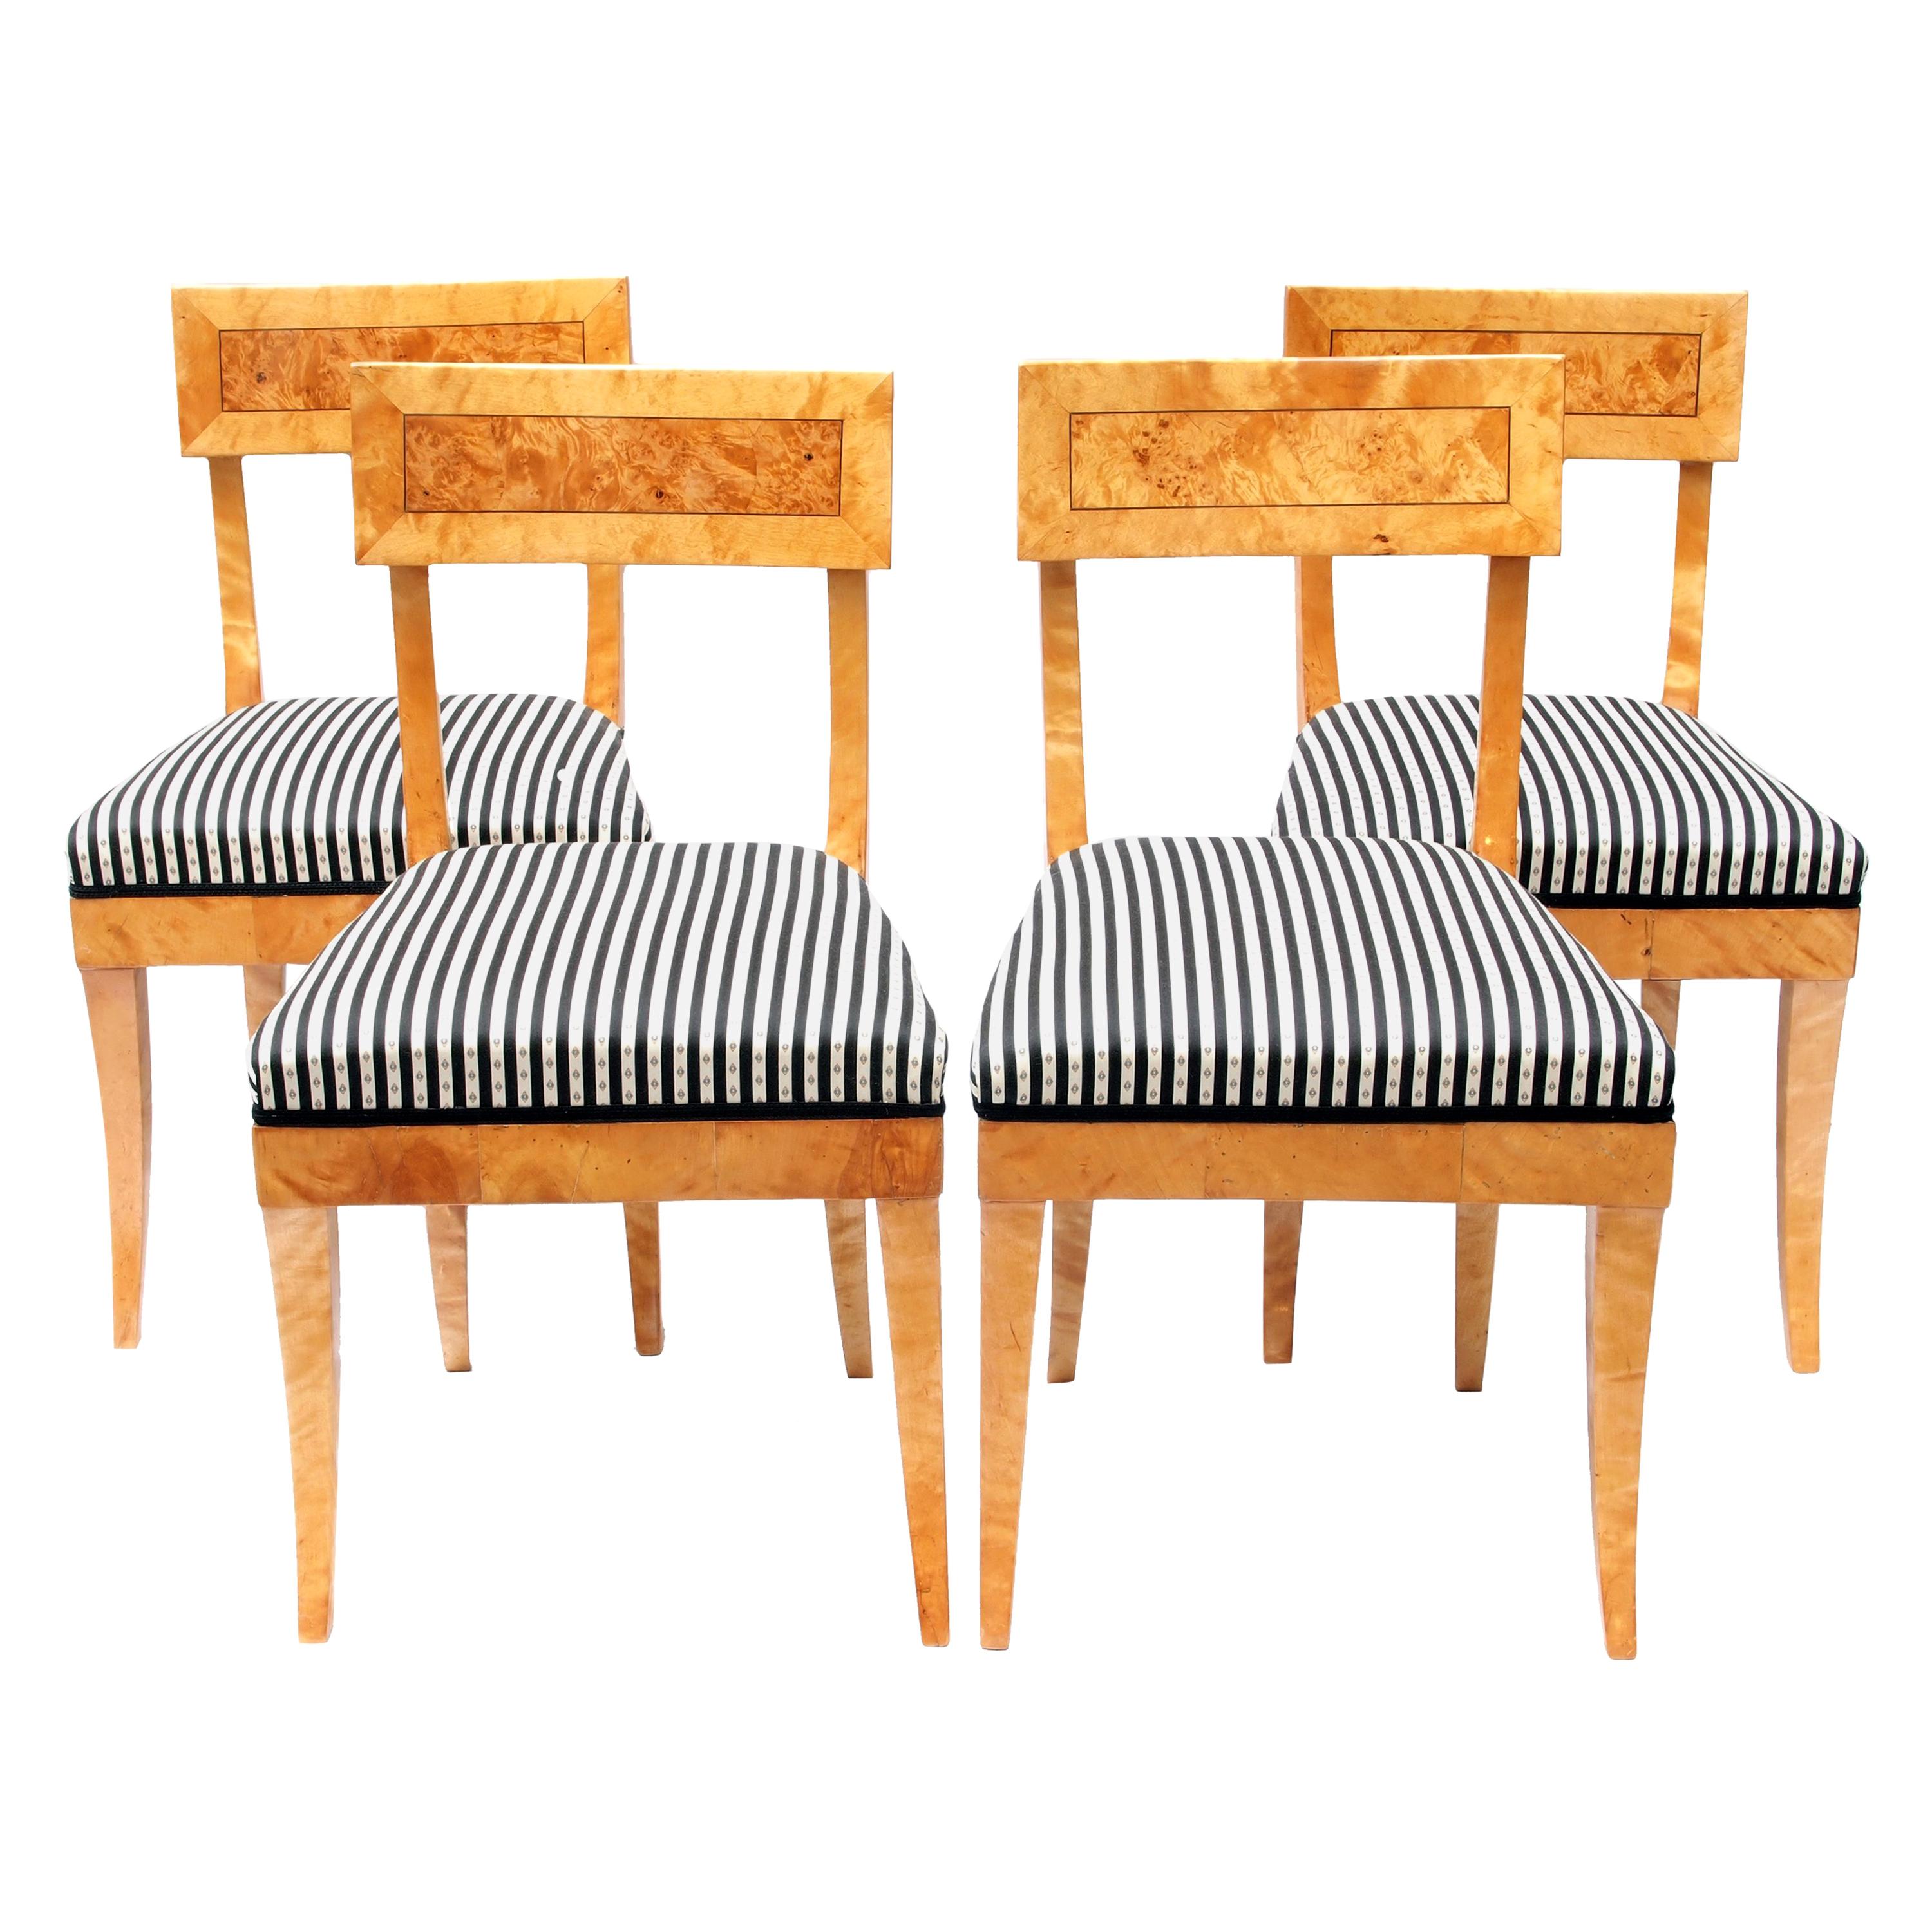 Ensemble de quatre chaises Biedermeier en bois de bouleau du début du XIXe siècle en provenance d'Allemagne